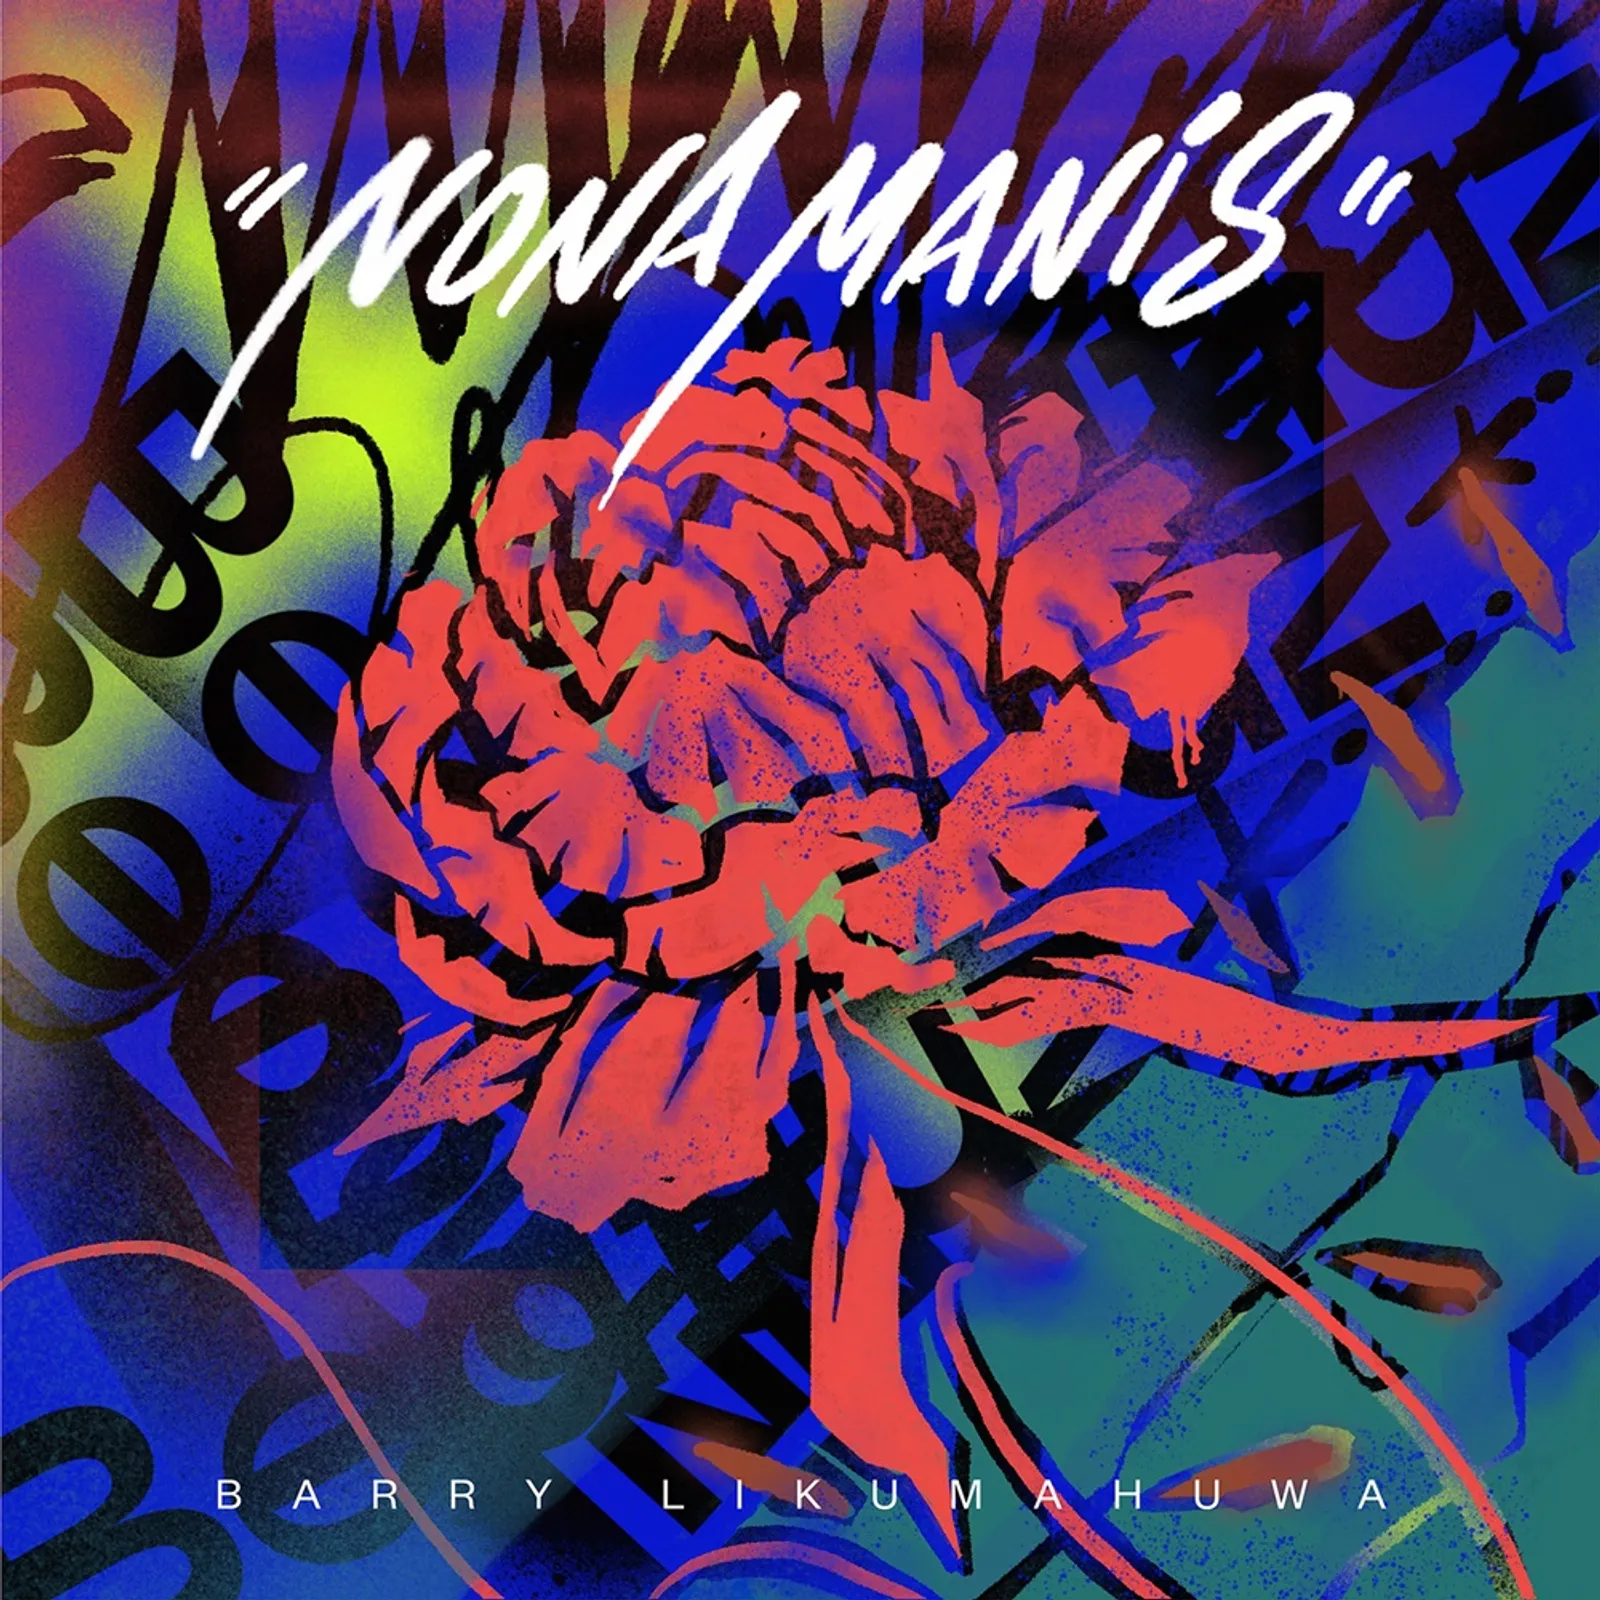 "Nona Manis", Single Baru Barry Likumahuwa yang Bikin Candu